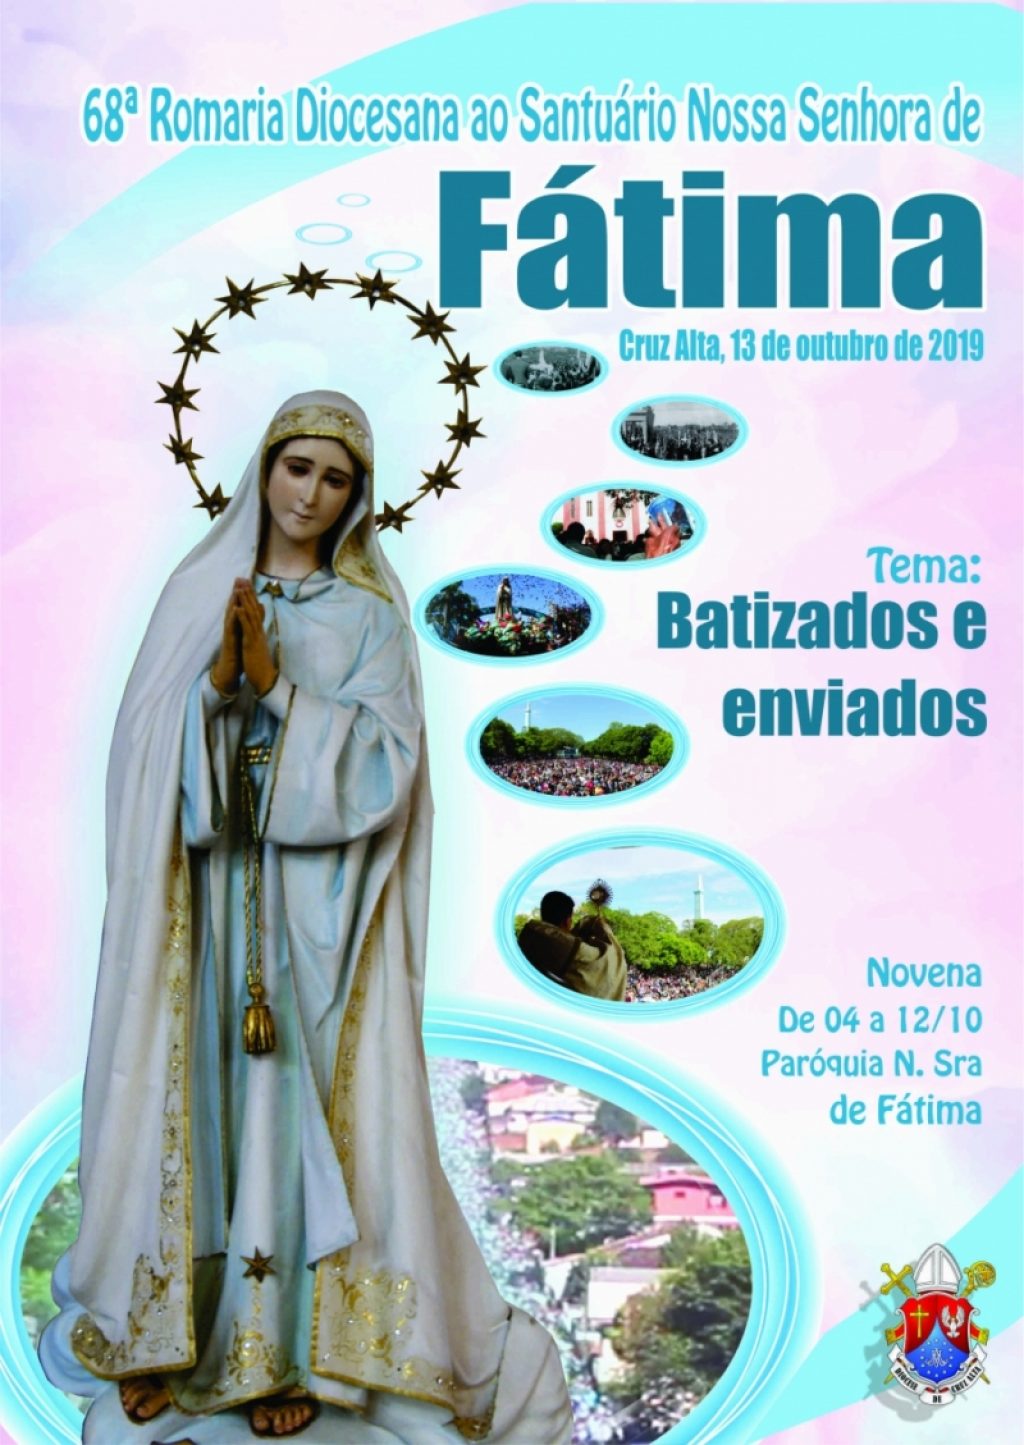 68ª Romaria Nossa Senhora de Fátima será neste domingo em Cruz Alta